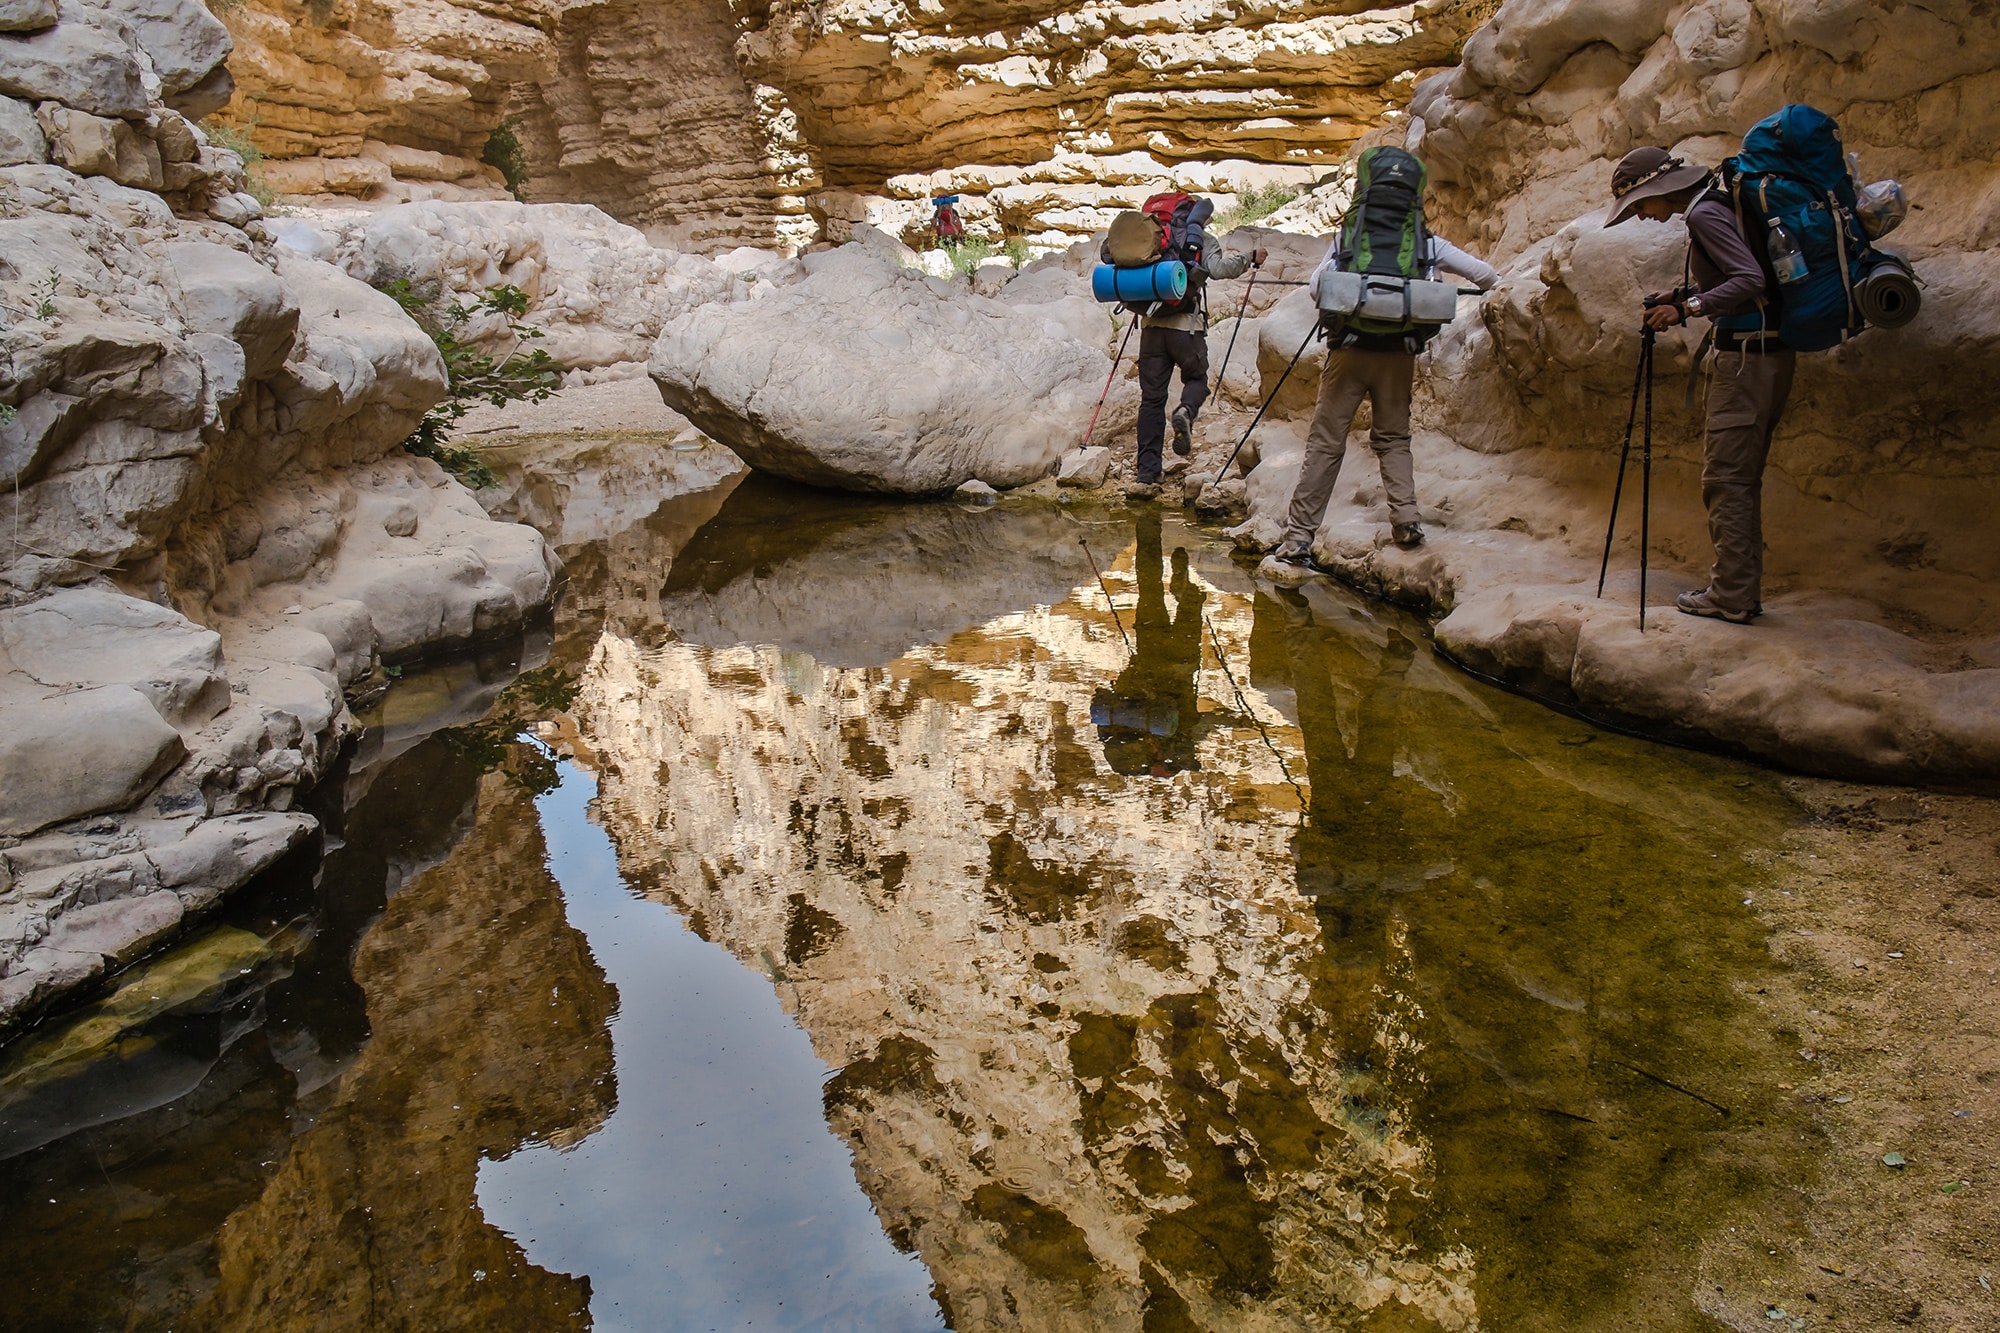 Israel National Trail: An Unforgettable Trekking Adventure